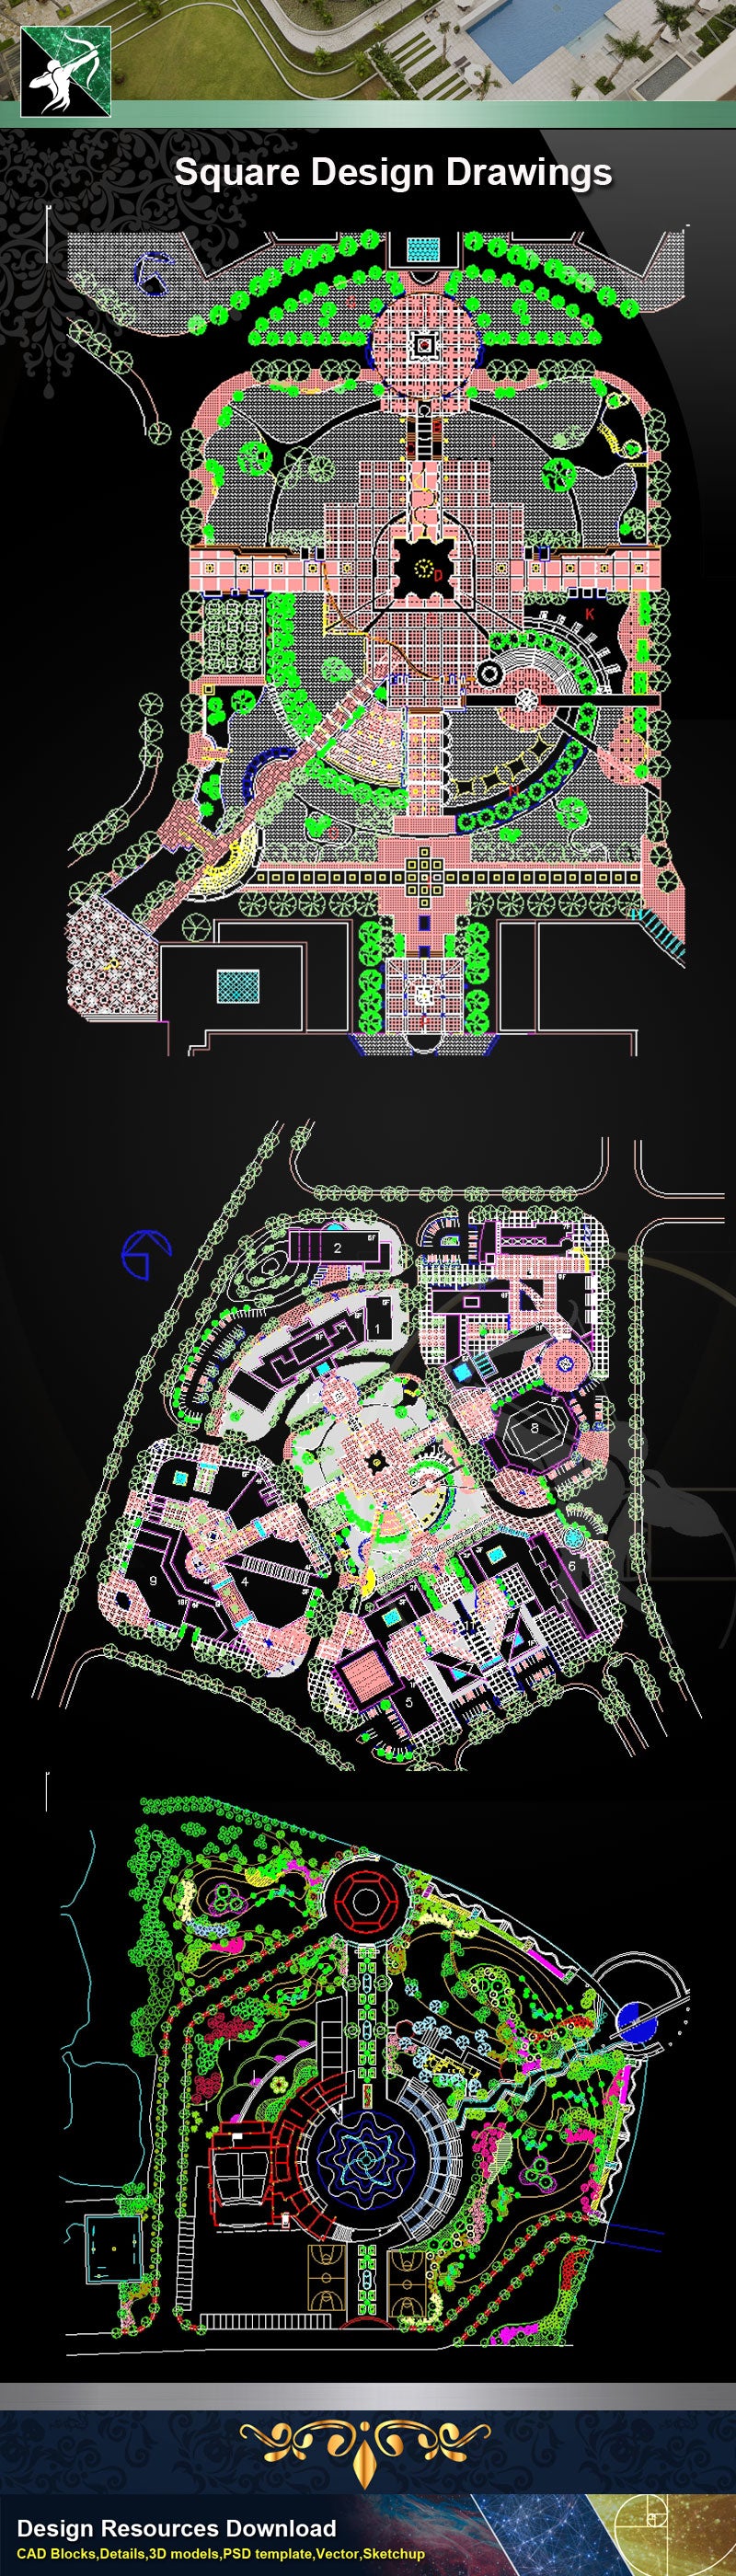 Square Design-Landscape CAD Drawings V.1